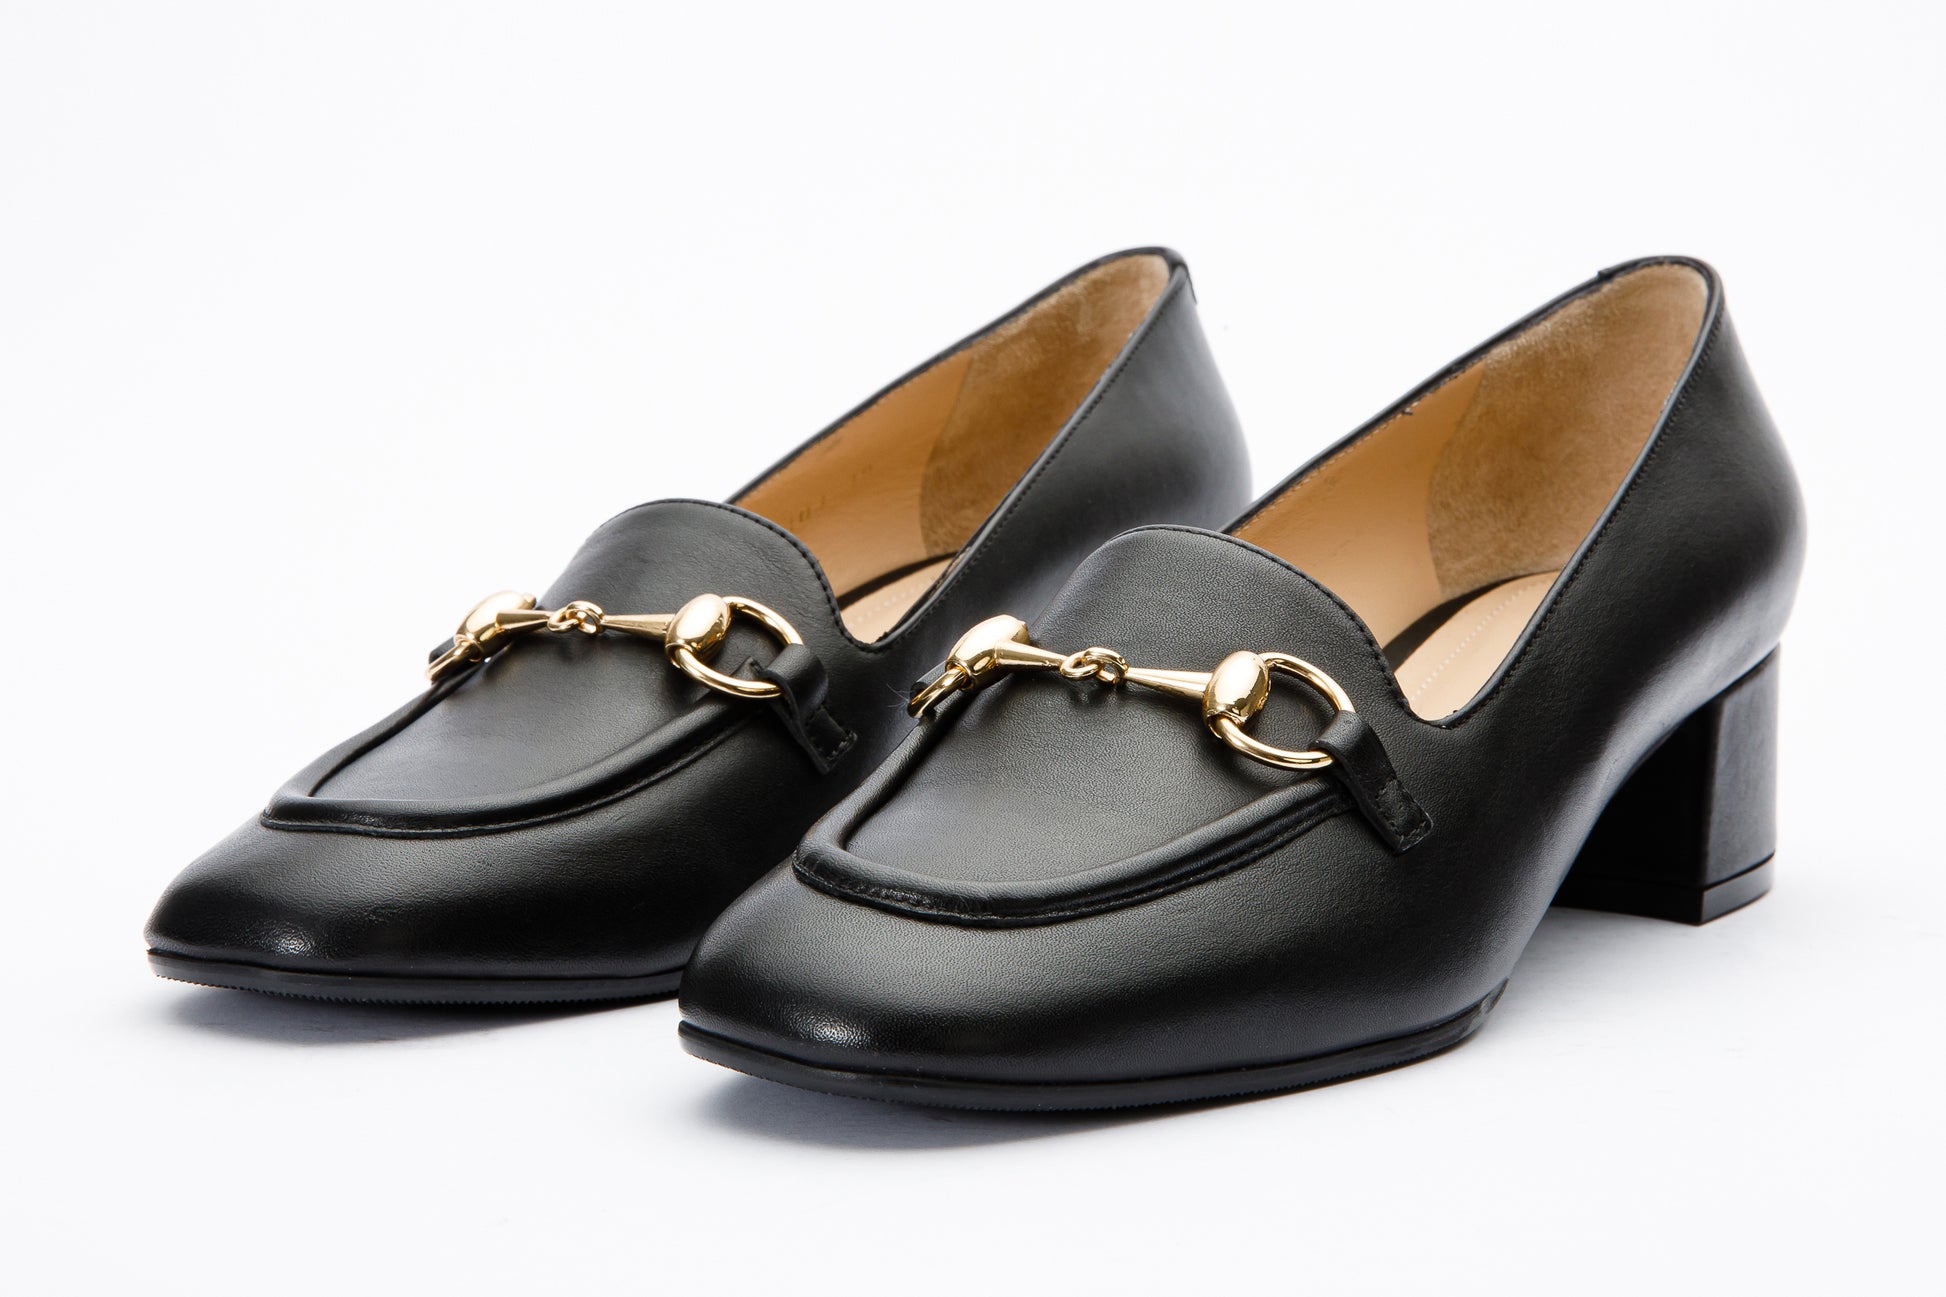 The Delhi Black Leather Block Heel Pump Women Shoe – Vinci Leather Shoes